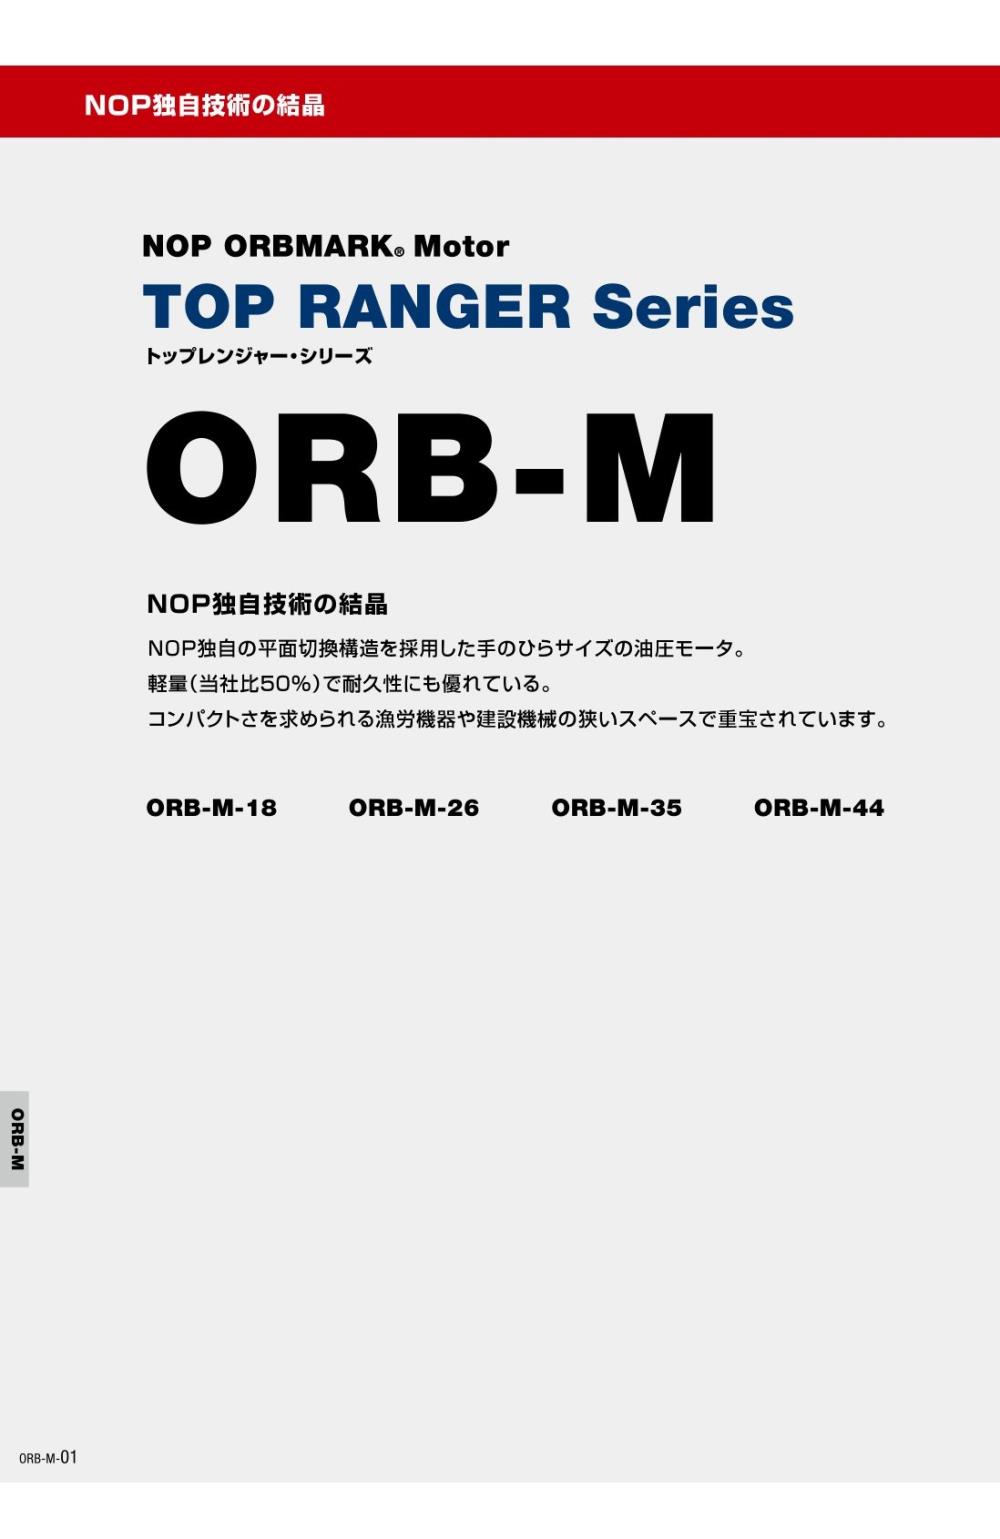 NOP ORBMARK Motor ORB-M-44 Series